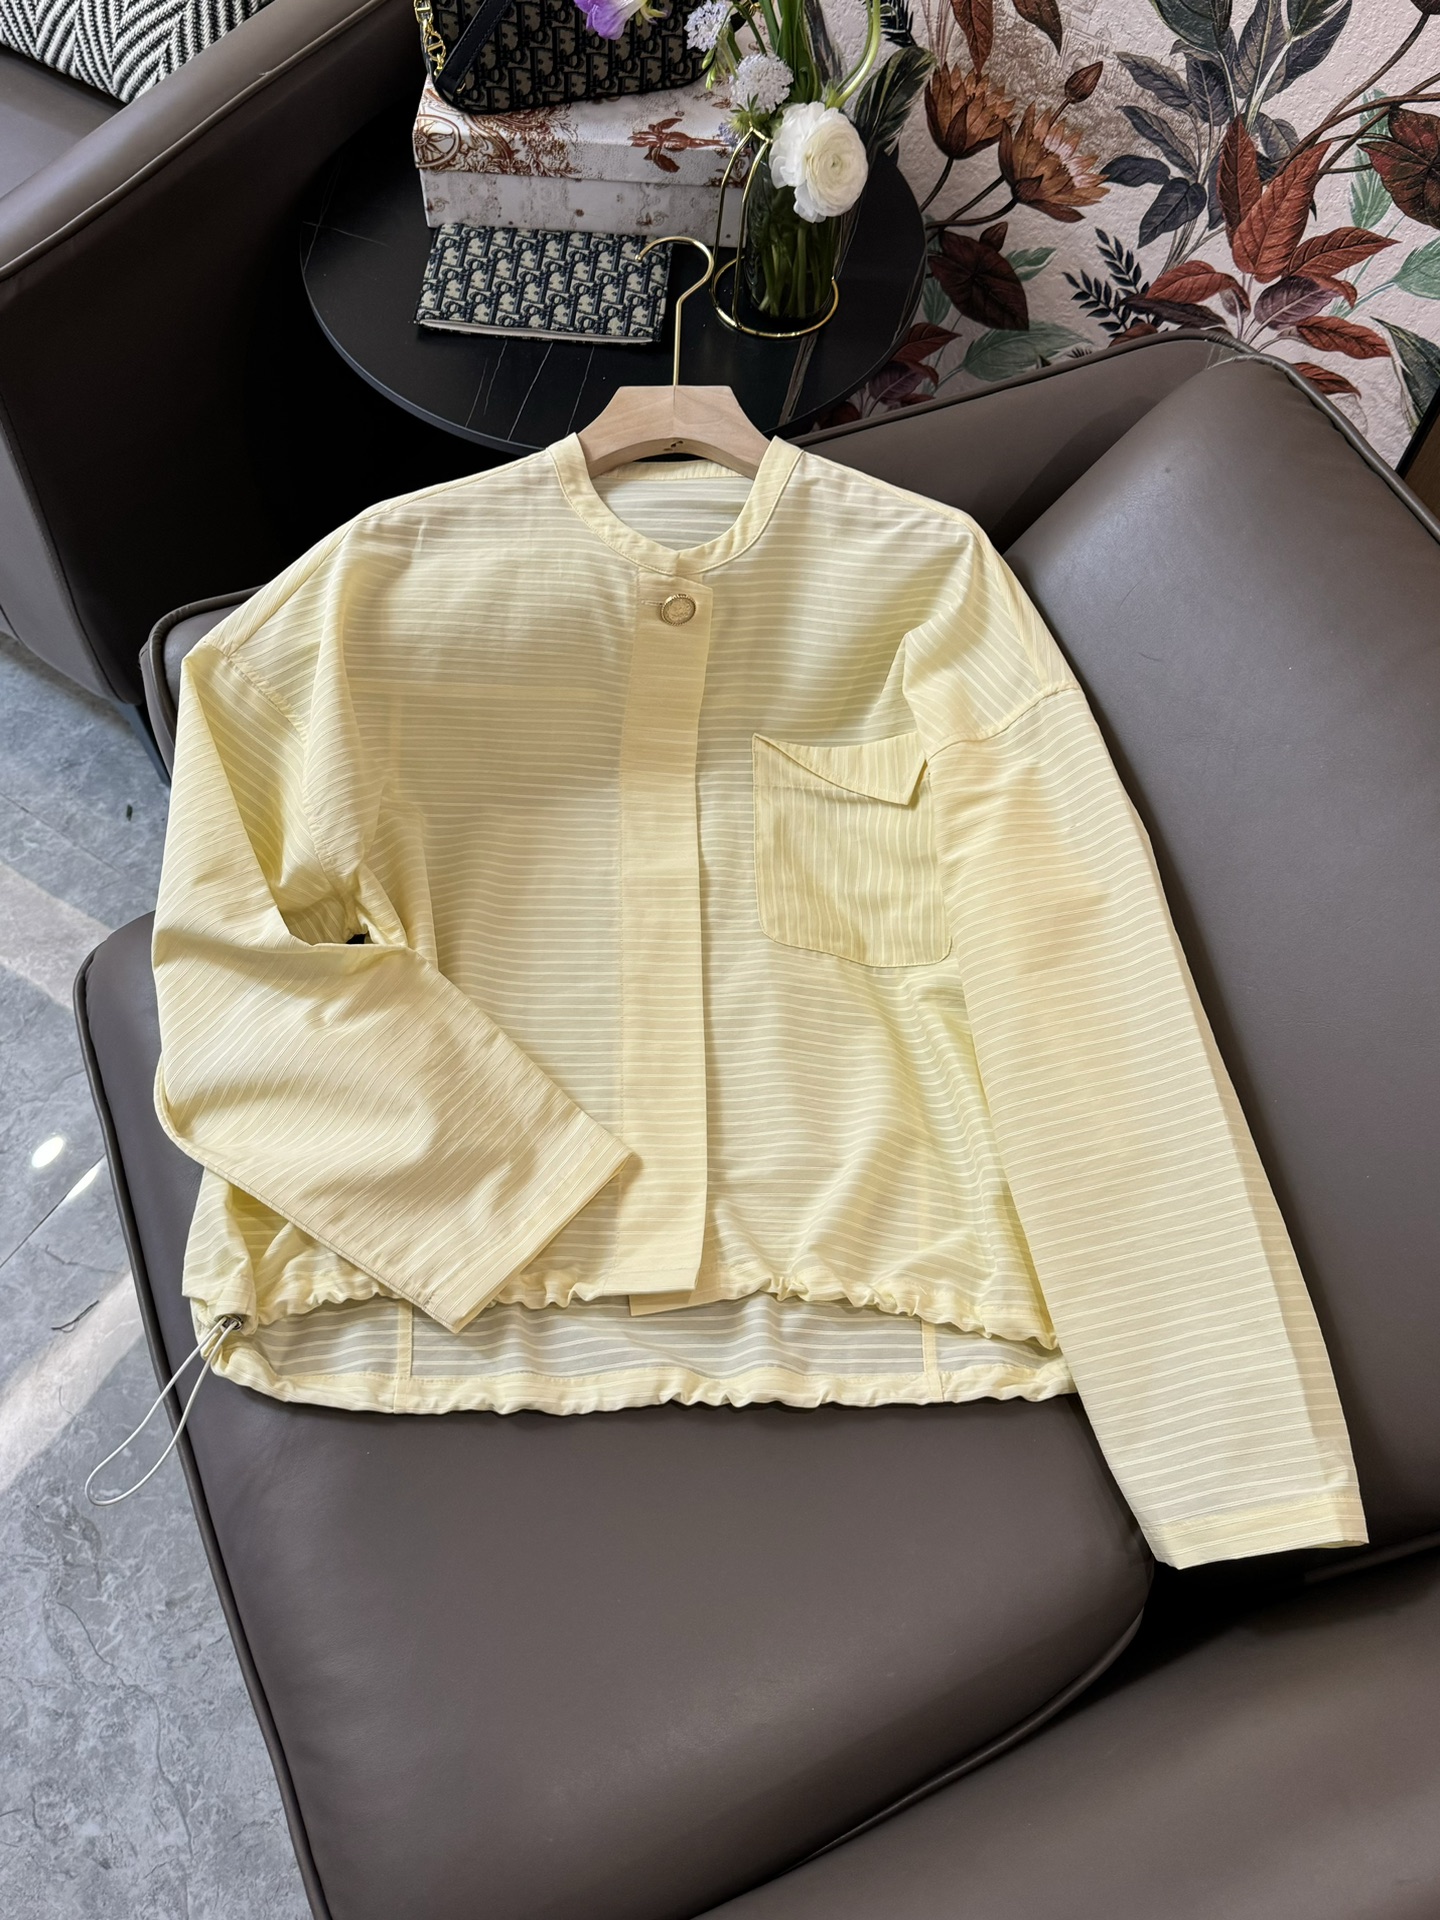 YJ009#新款衬衫原创设计大厂货条纹长袖衬衫淡黄色SML